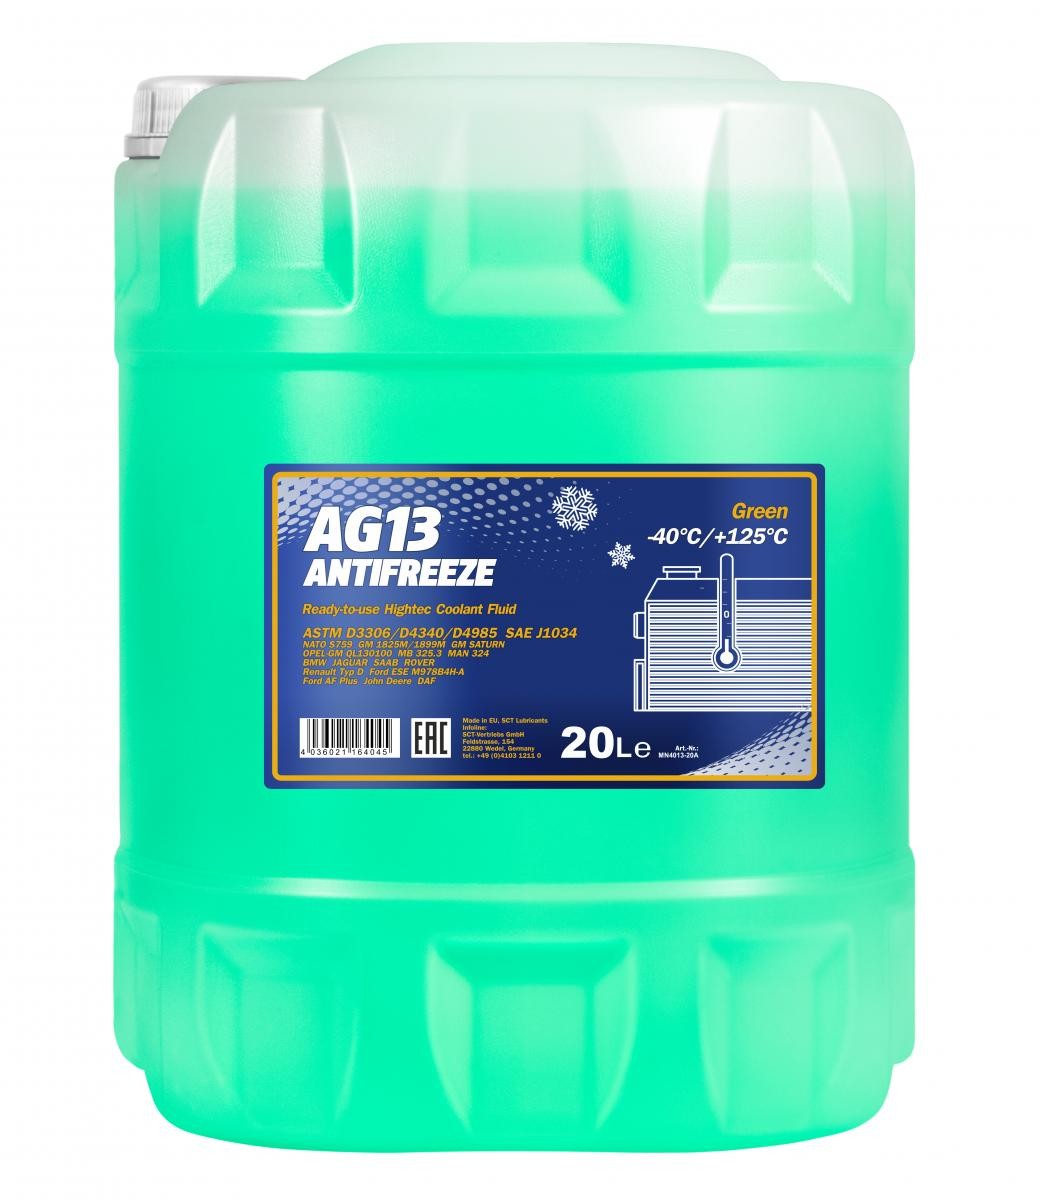 Mannol 4013 Kühlerfrostschutz Antifreeze AG13 Hightec -40 Fertigmischung 20 Liter